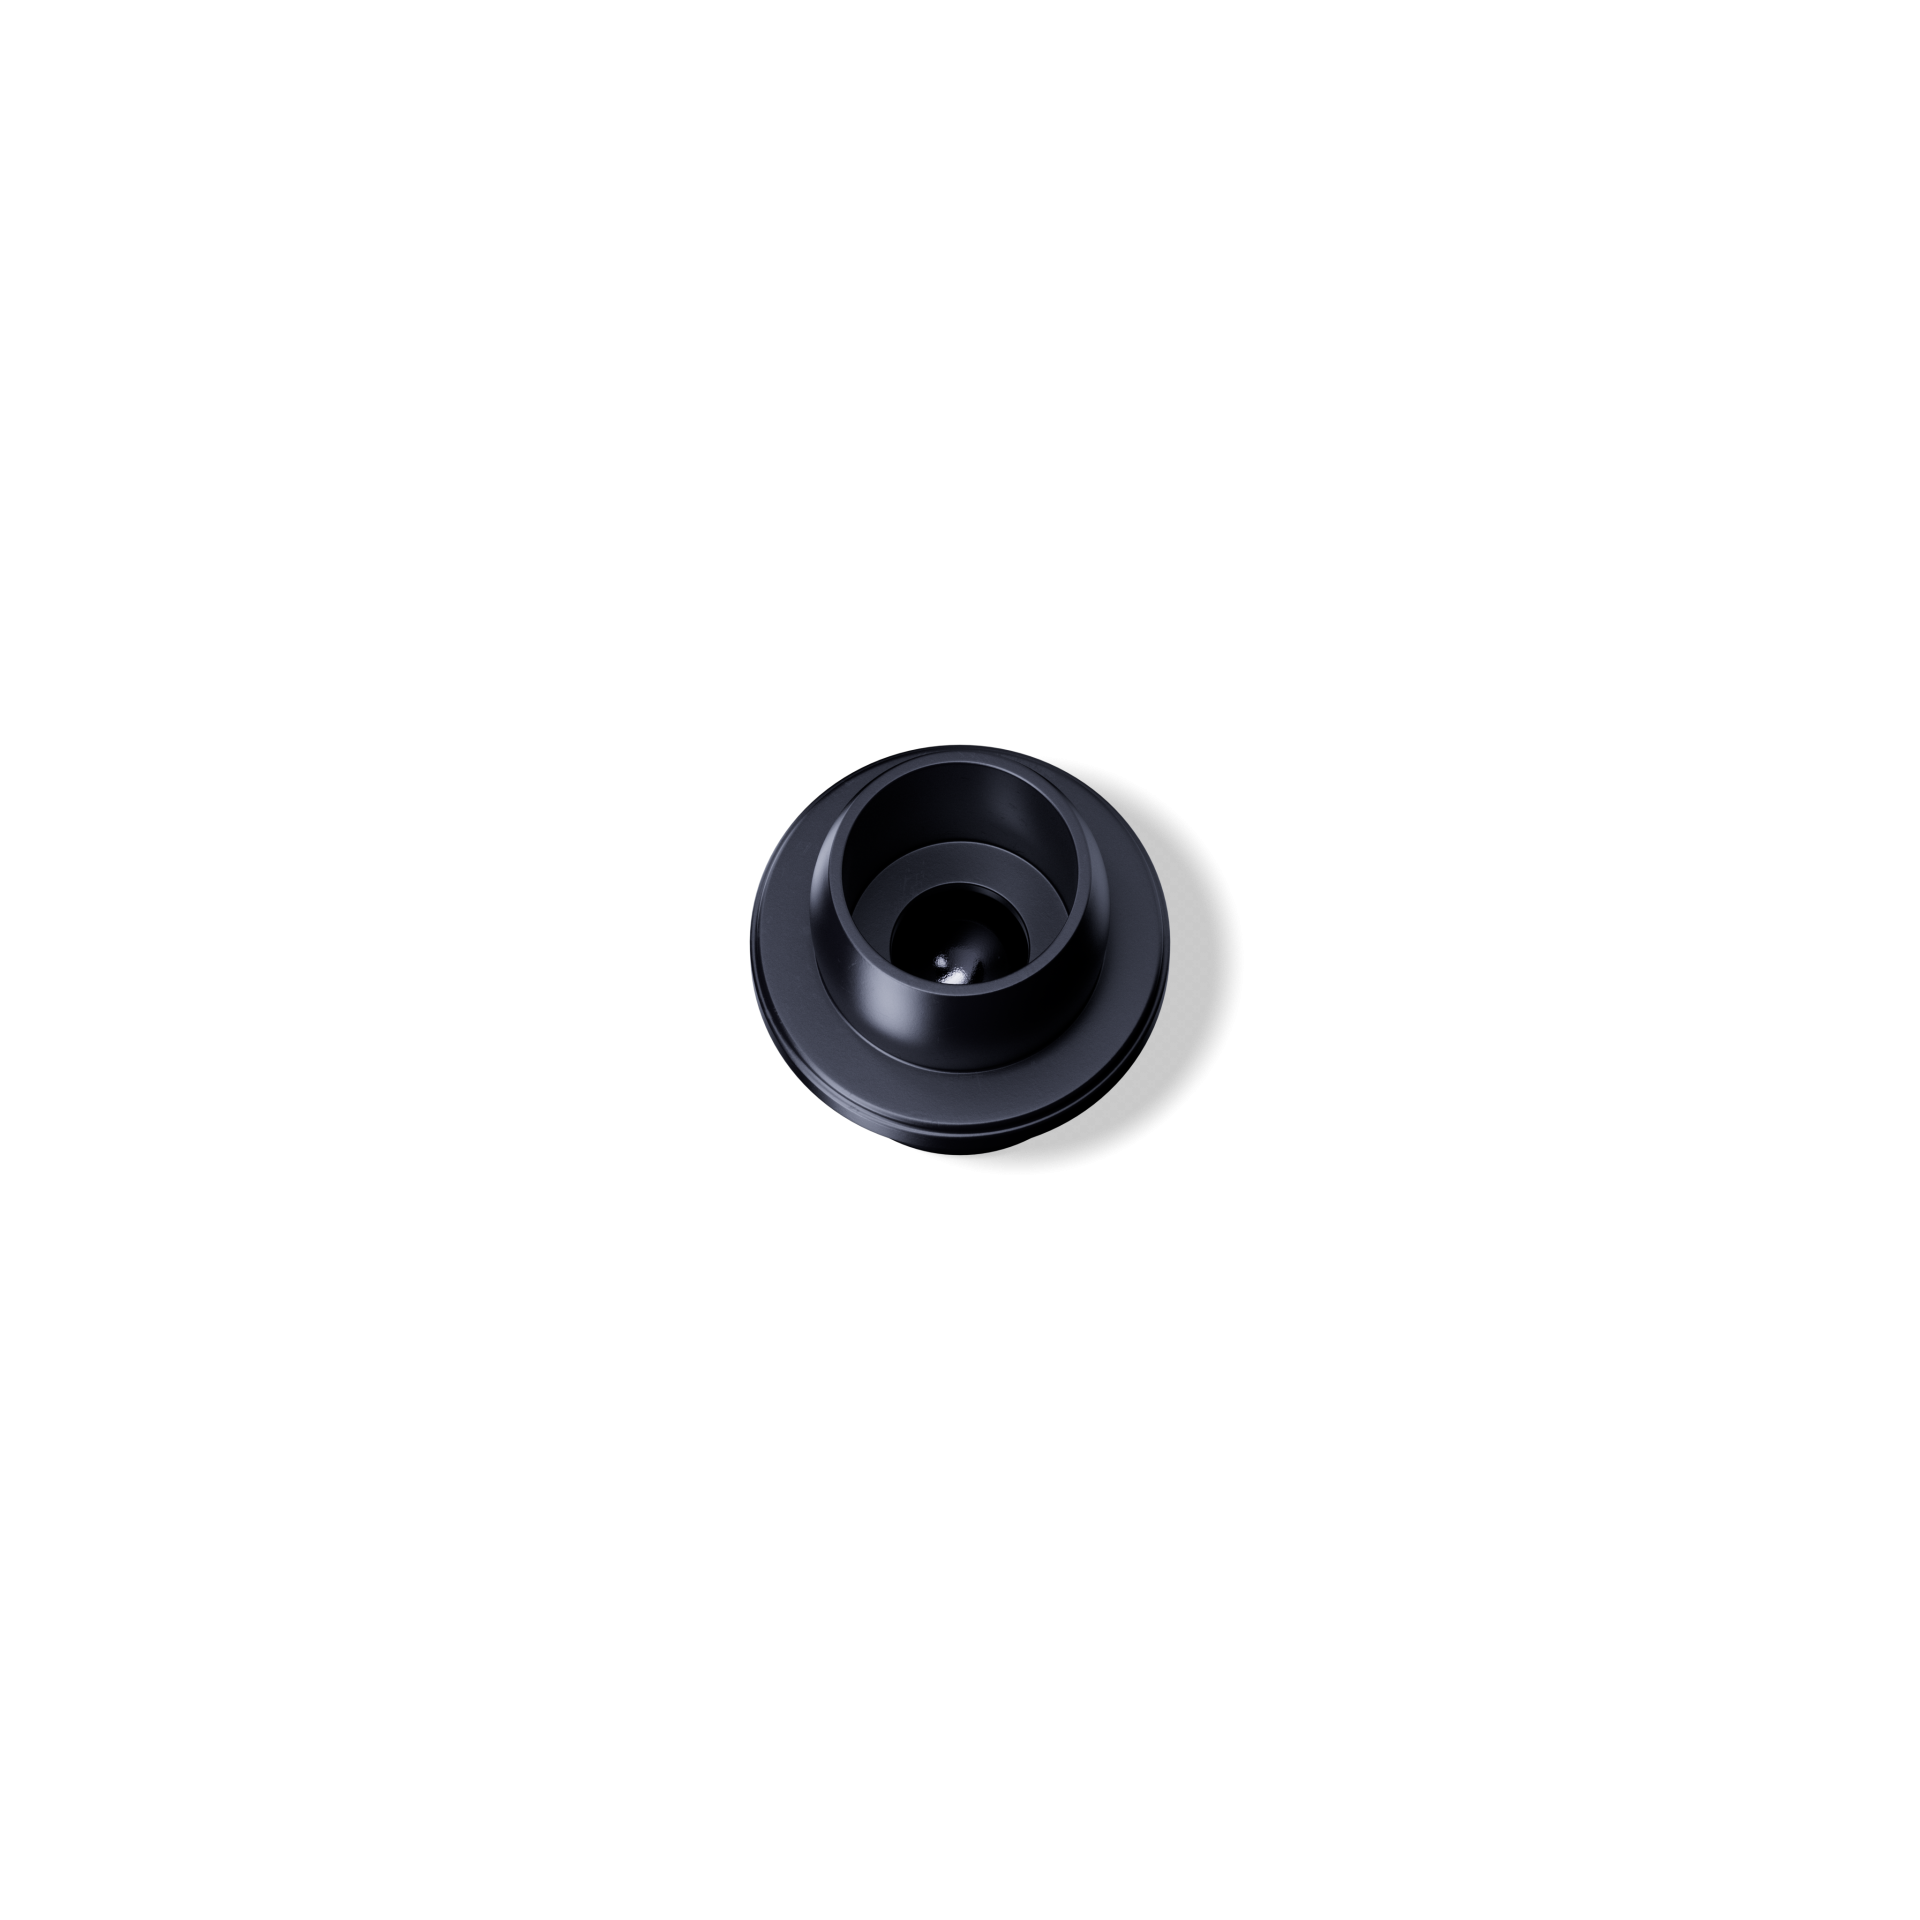 Roll-on-Verschluss DIN18, Urea, schwarzer Einsatz, polierte Glas-Kugel, schwarzer Deckel (Orion)